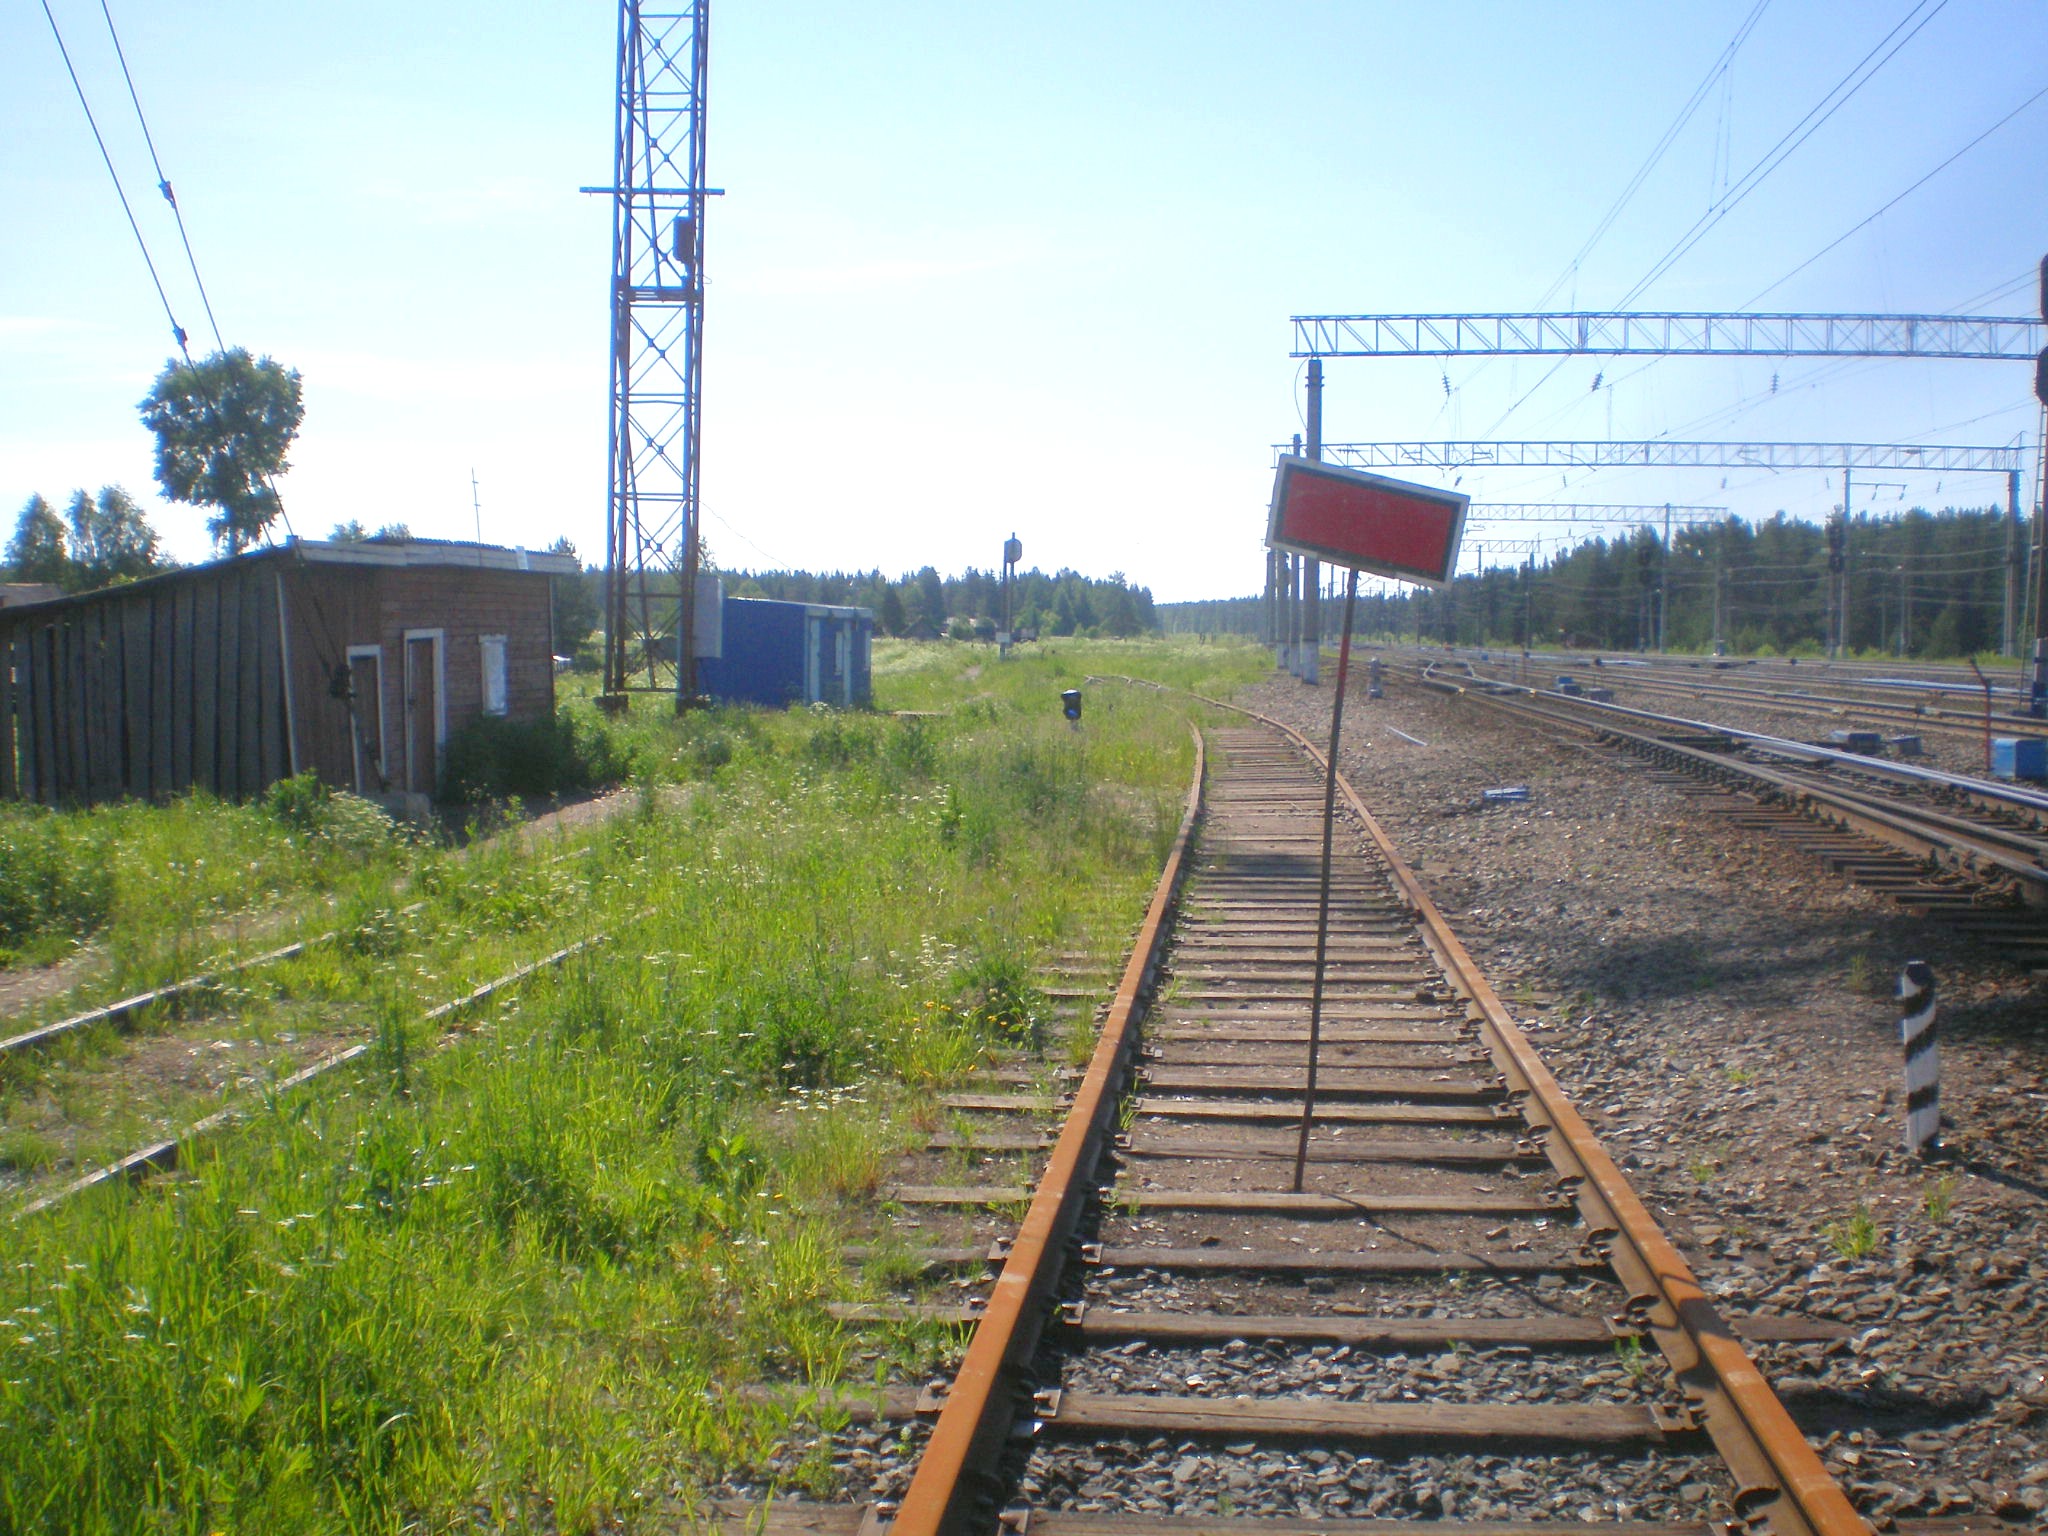 Мехреньгская железная дорога  —  фотографии, сделанные в 2009 году (часть 1)